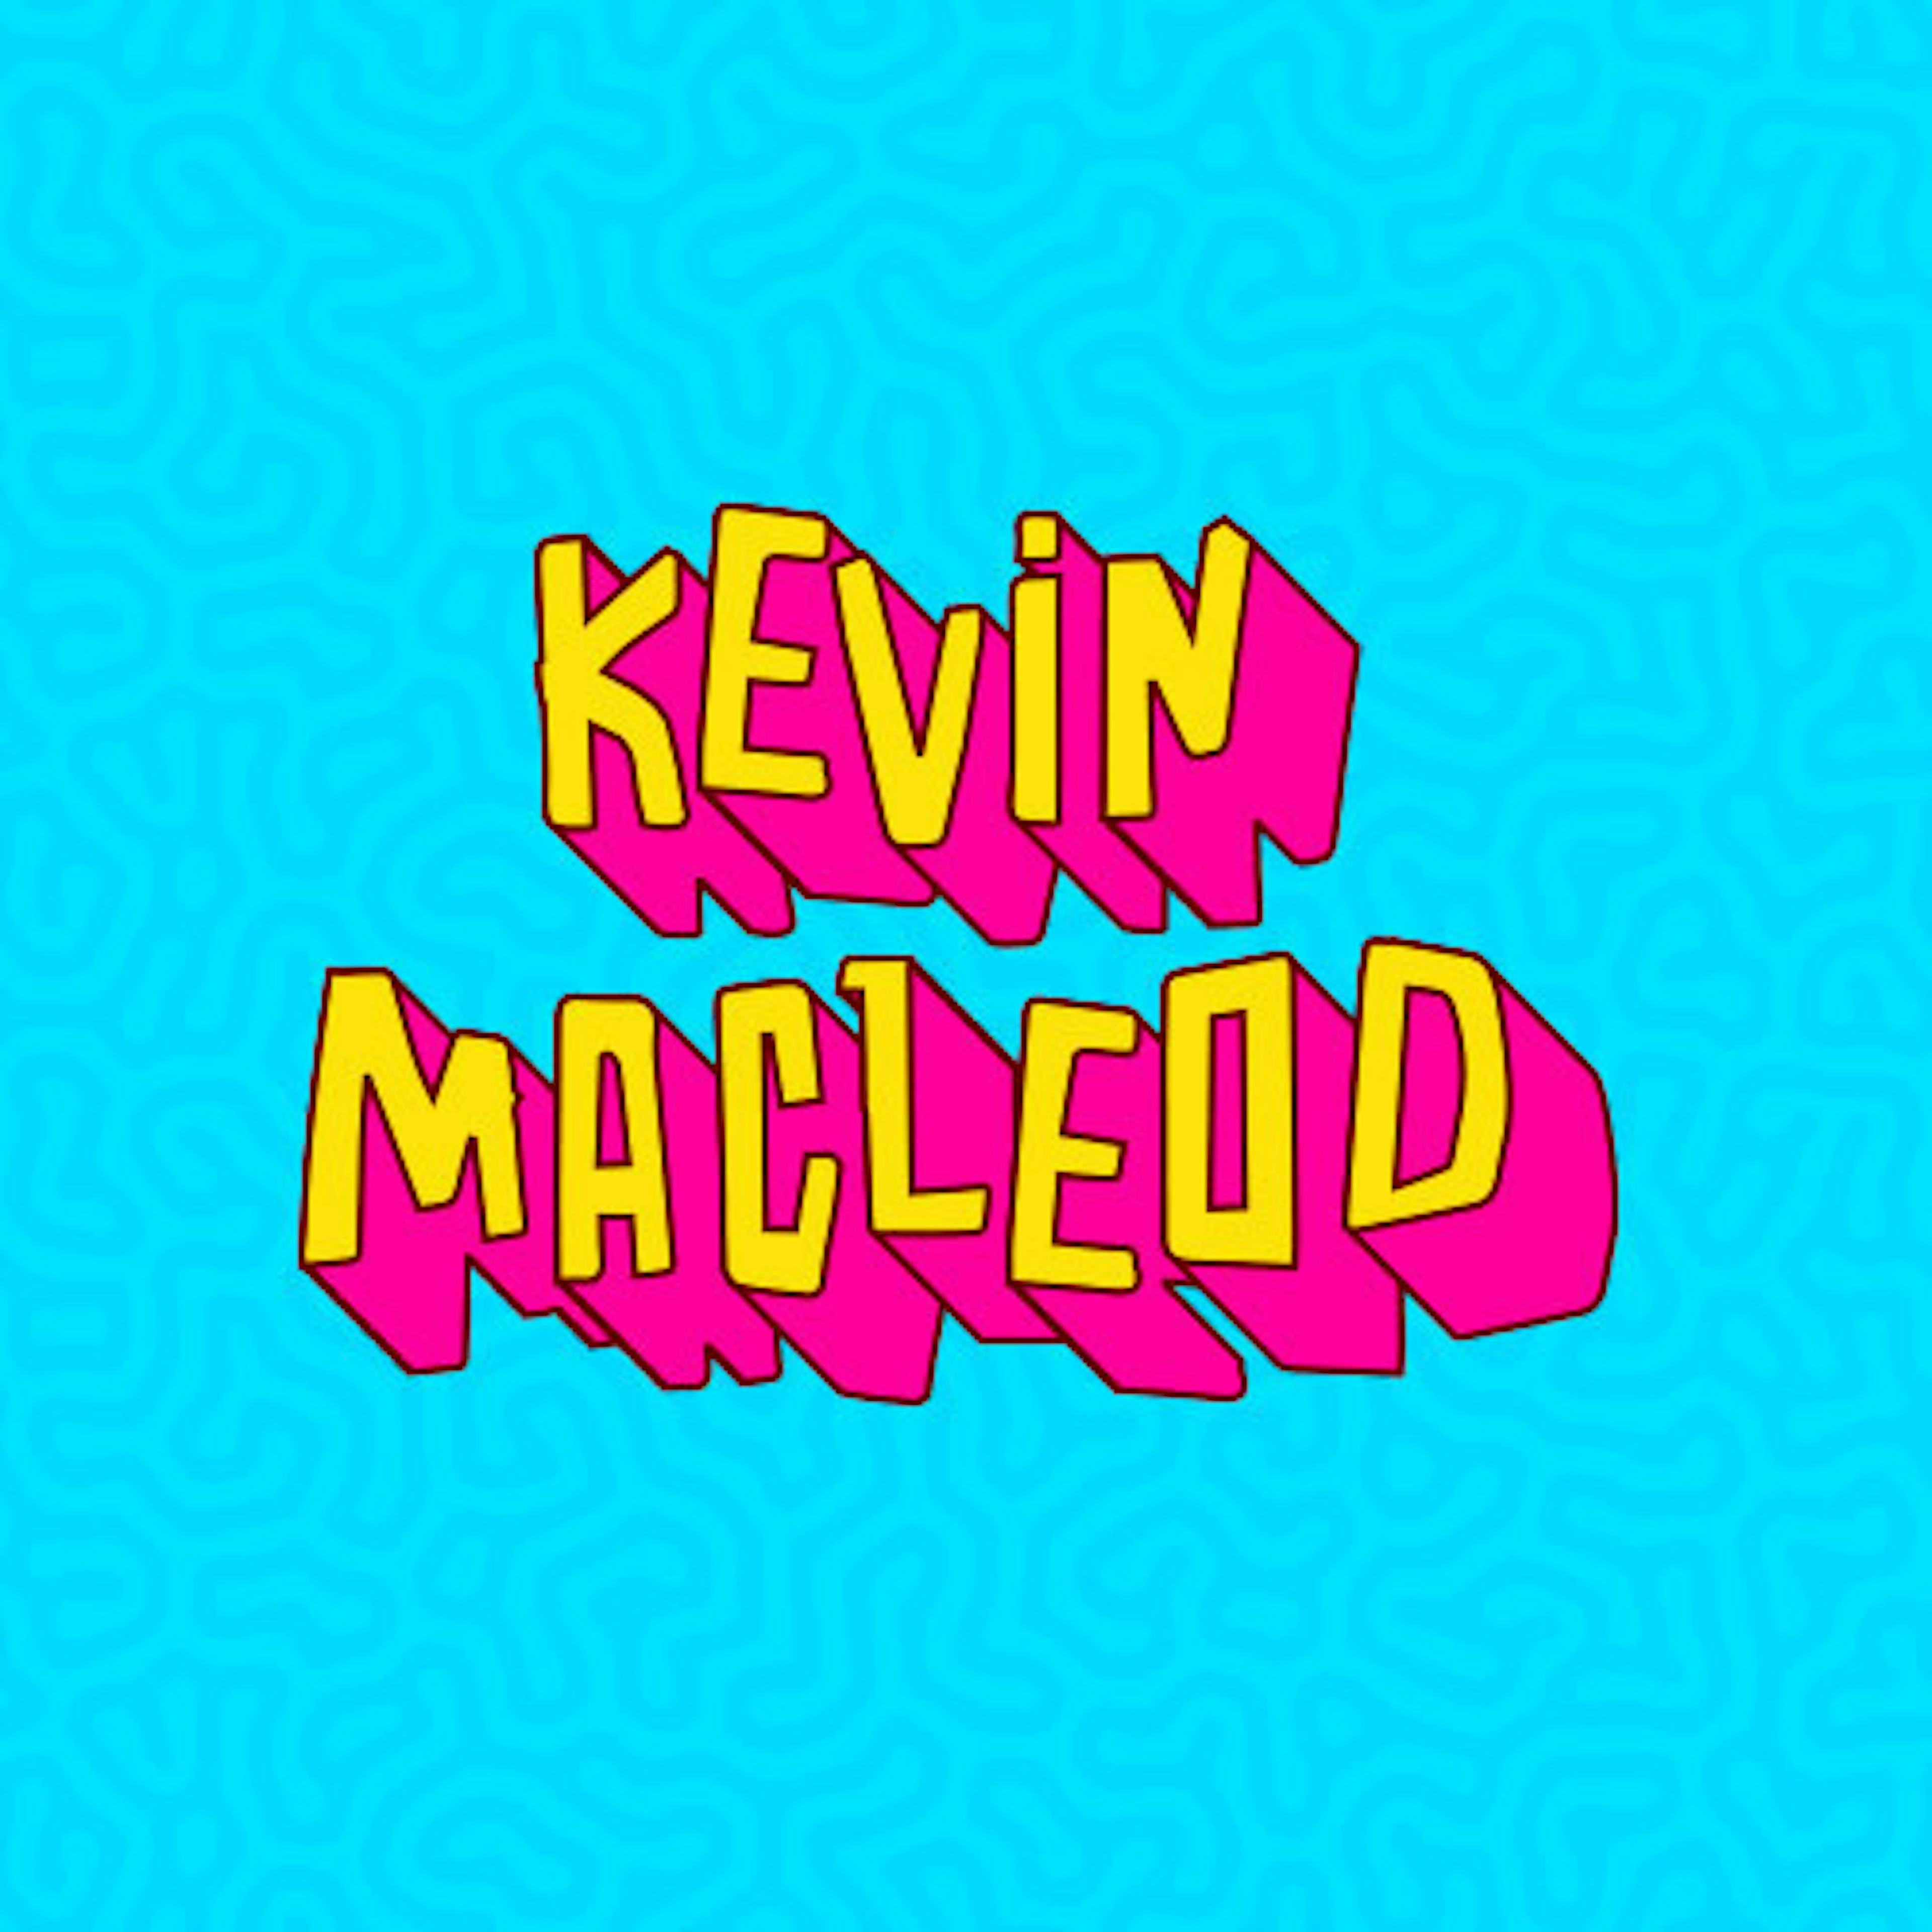 Kevin MacLeod artwork